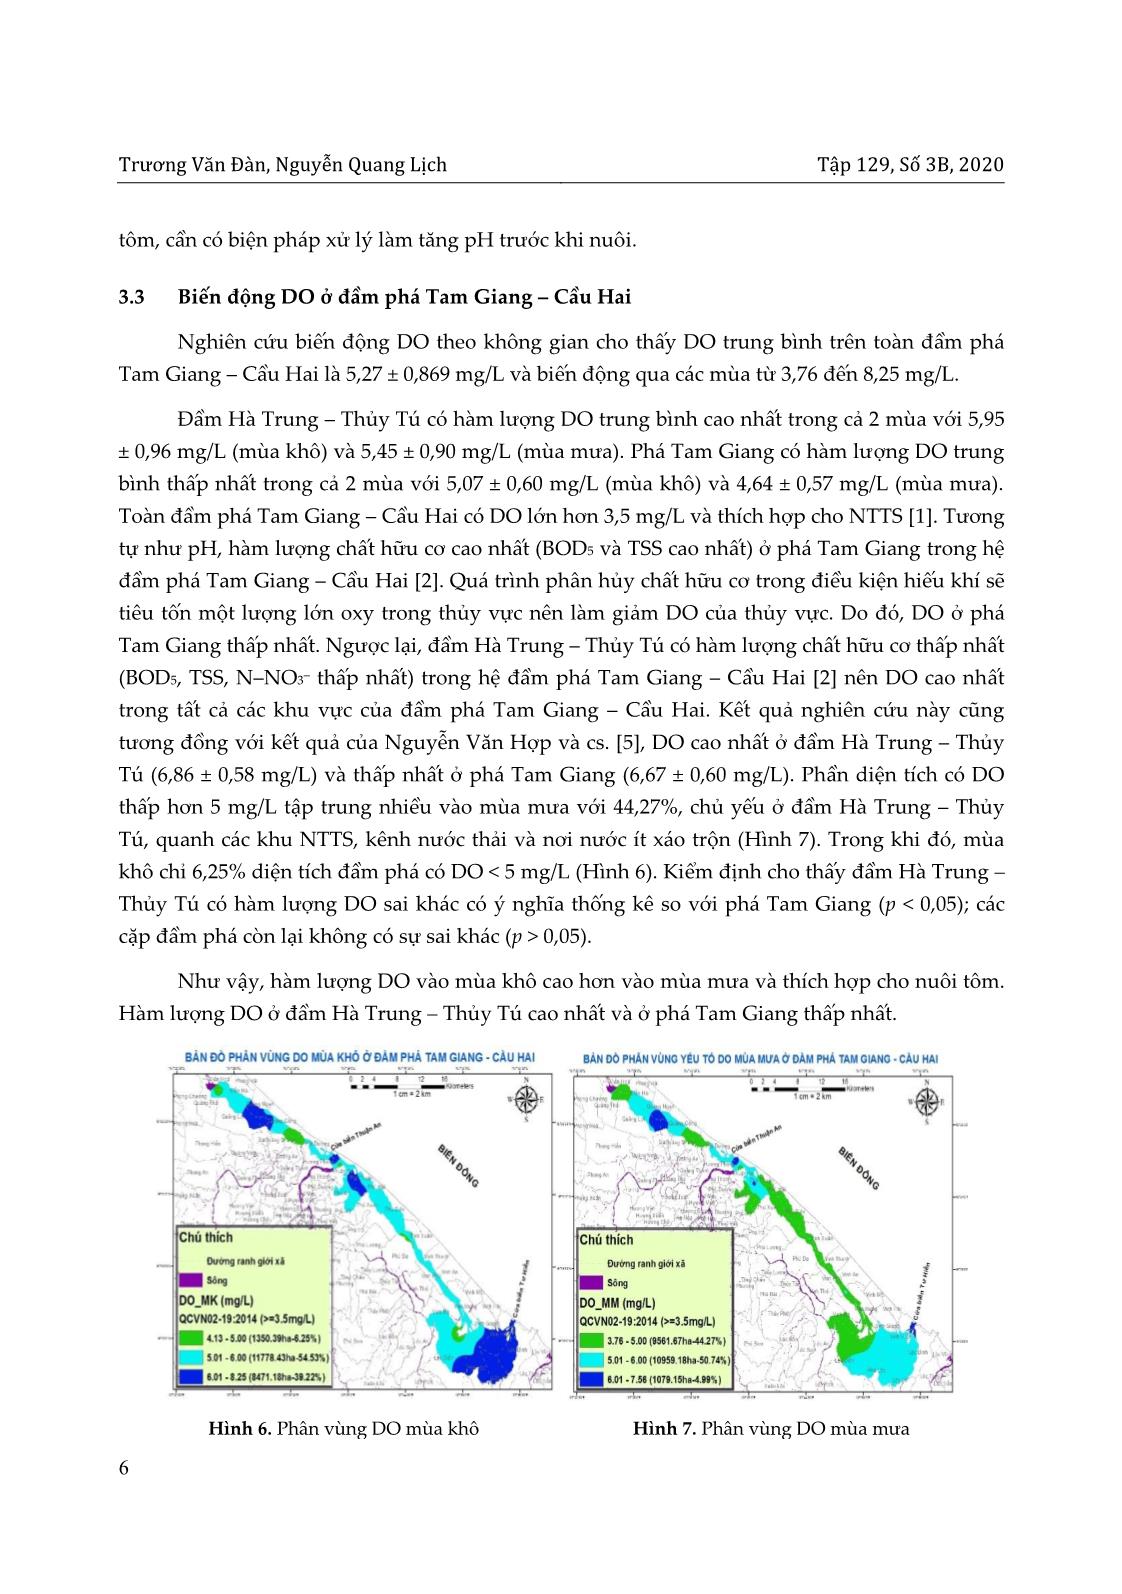 Phân vùng chất lượng nước cho nuôi tôm ở đầm phá Tam Giang – Cầu Hai, tỉnh Thừa Thiên Huế với sự hỗ trợ của GIS trang 6